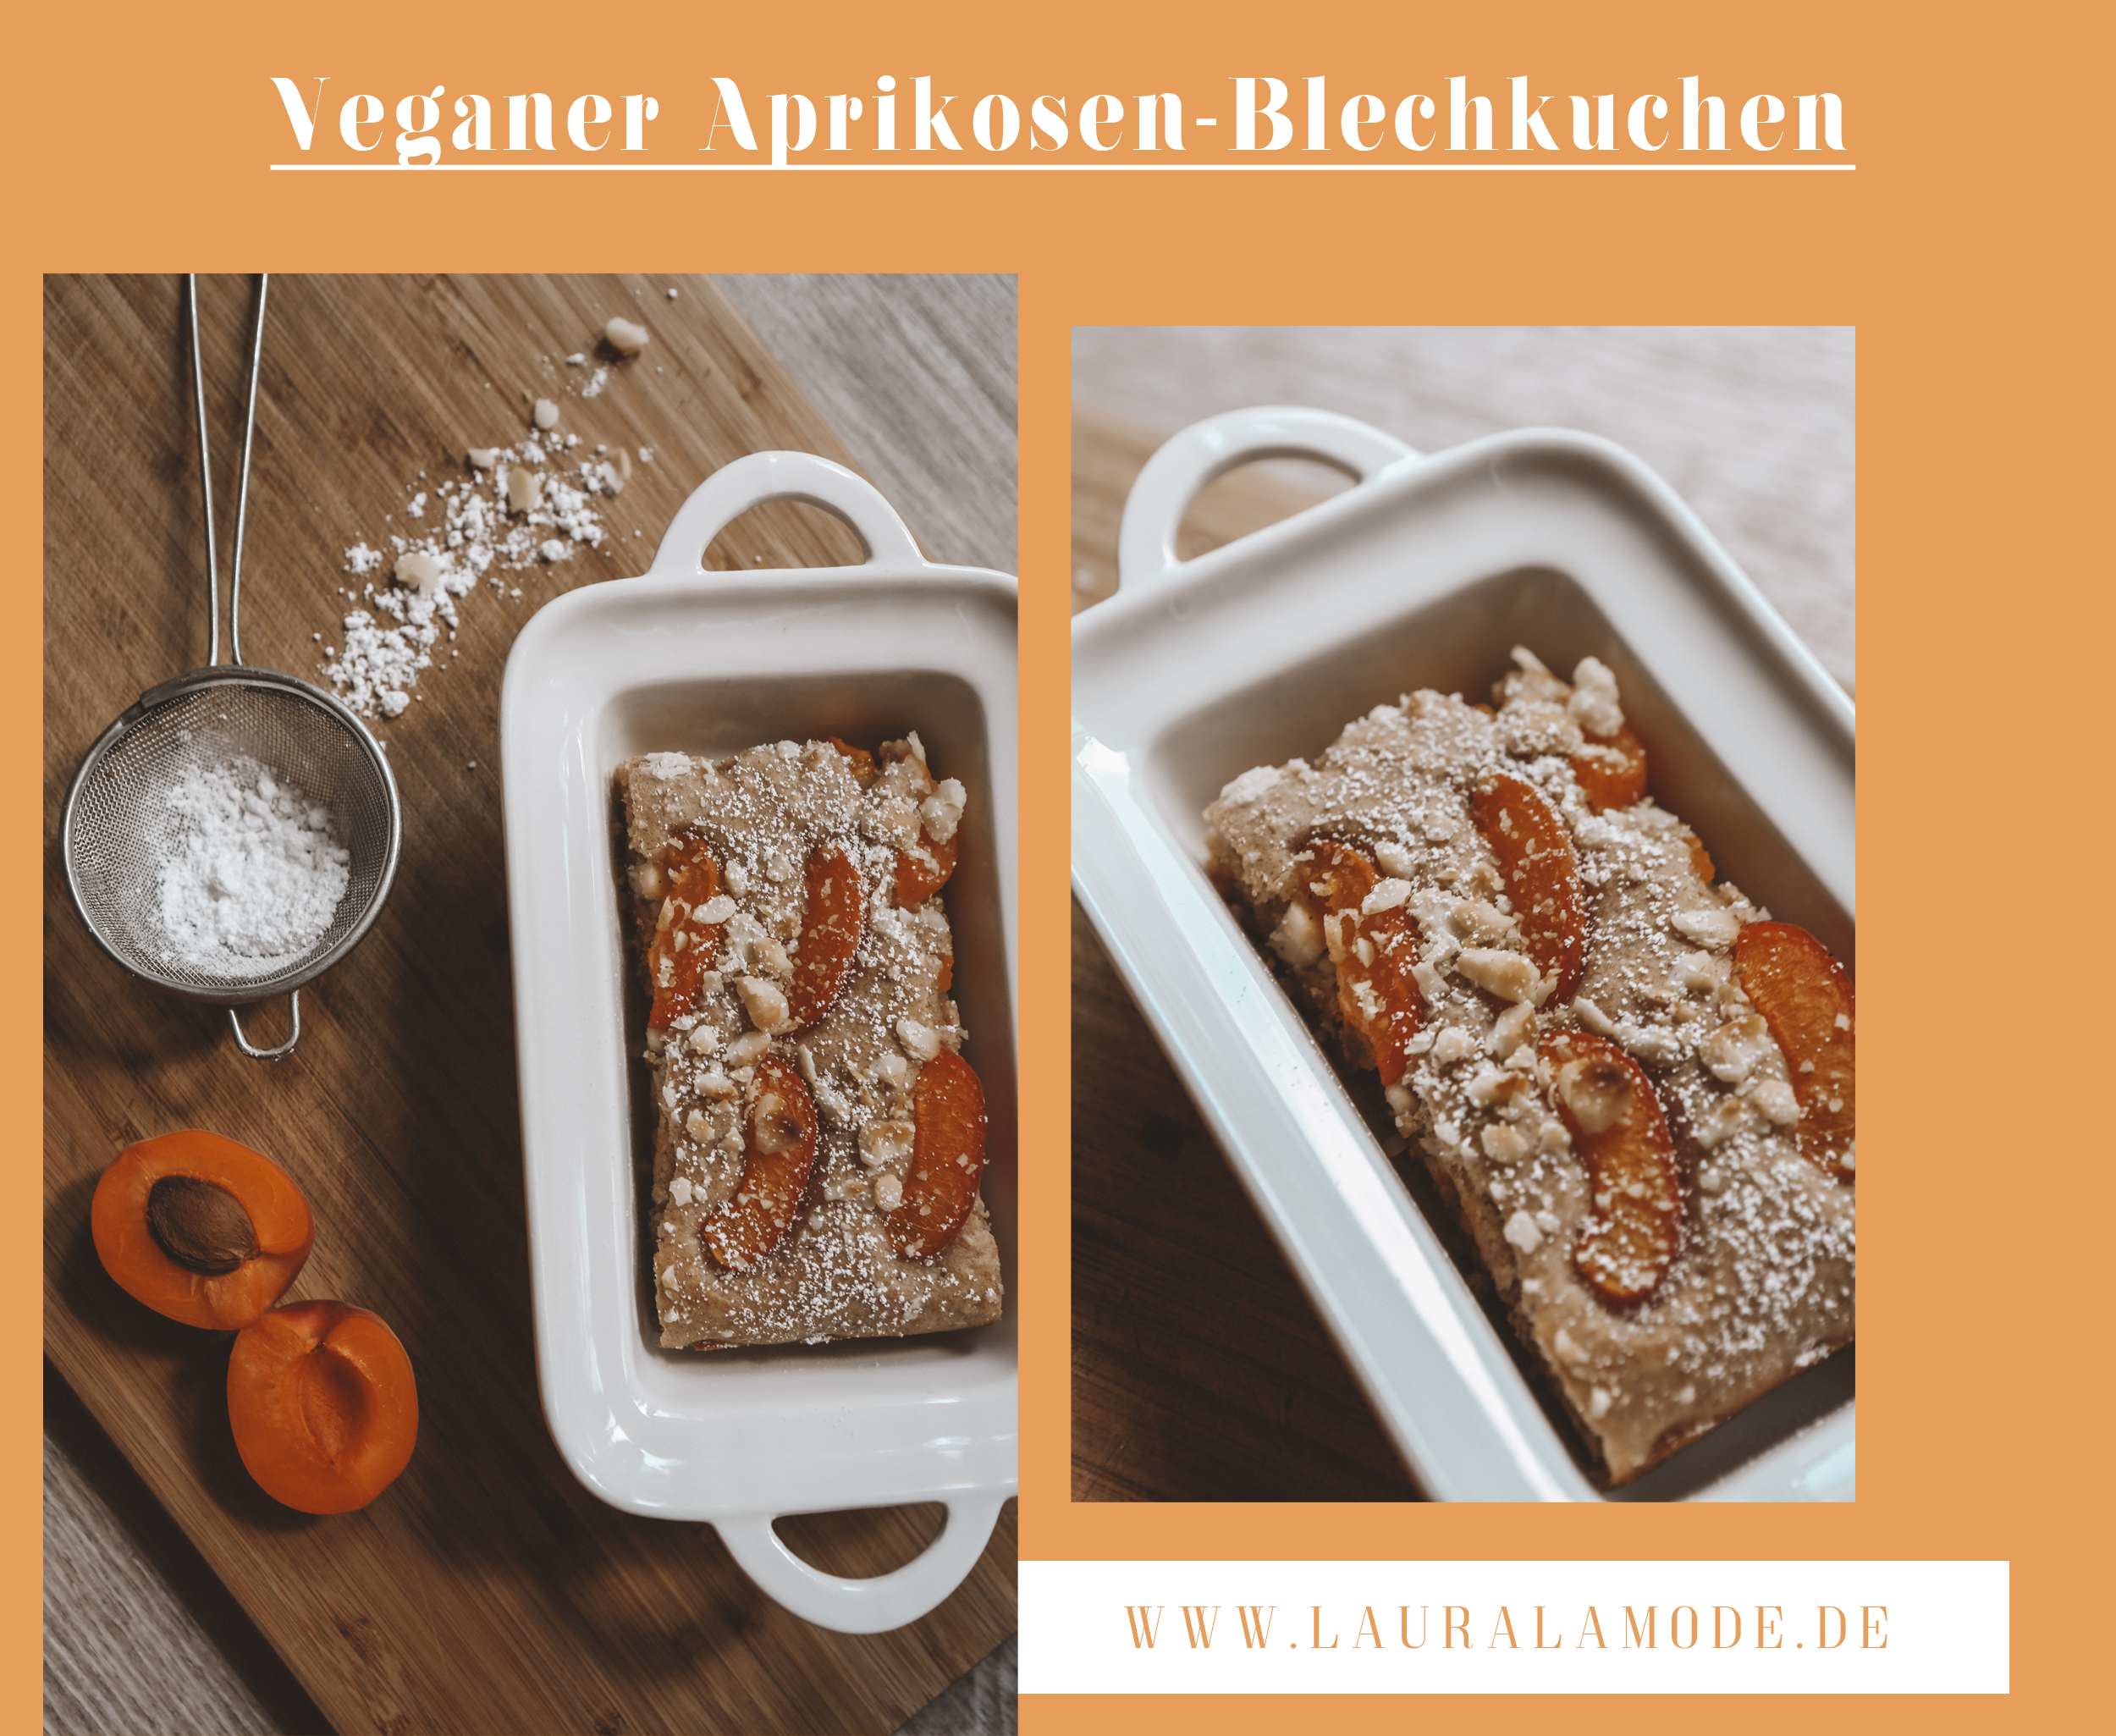 lauralamode-rezept-vegan-veganrezept-veganfood-veganrecipe-vegner blechkuchen-aprikosen-fruchtkuchen-frühlingsrezept-healthy-gesundessen-foodblog-foodblogger-berlin-munenchen-vegan blogger